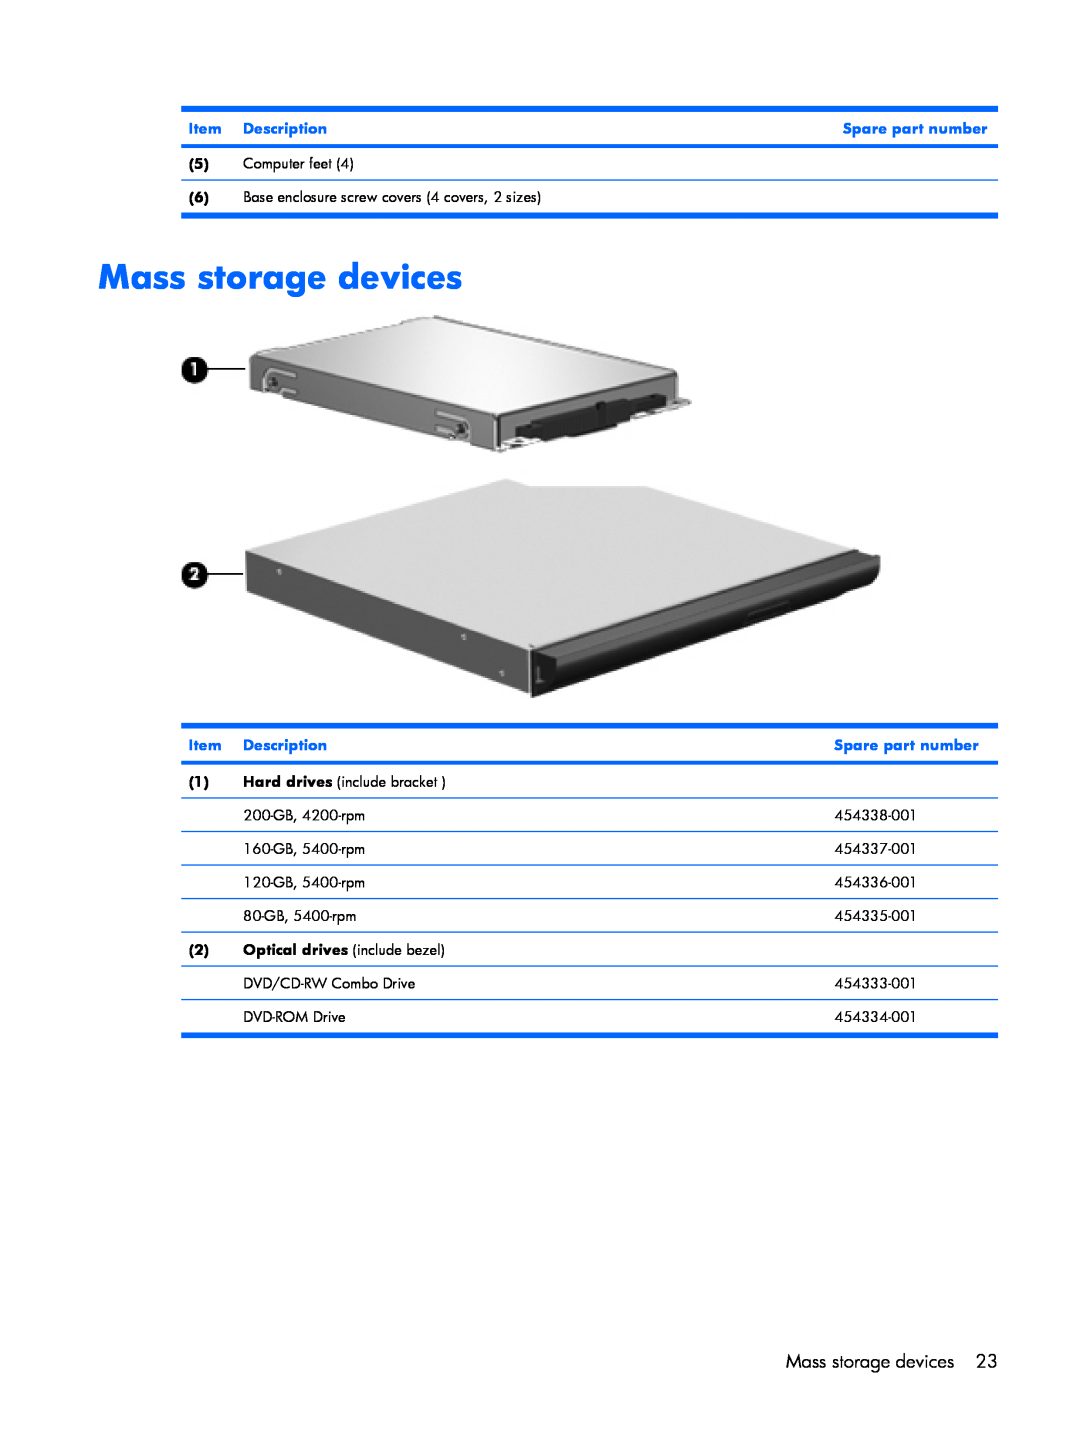 HP B1280TU, B1201VU, B1203VU, B1200, B1205VU, B1204VU, B1298TU manual Mass storage devices, Item Description, Spare part number 